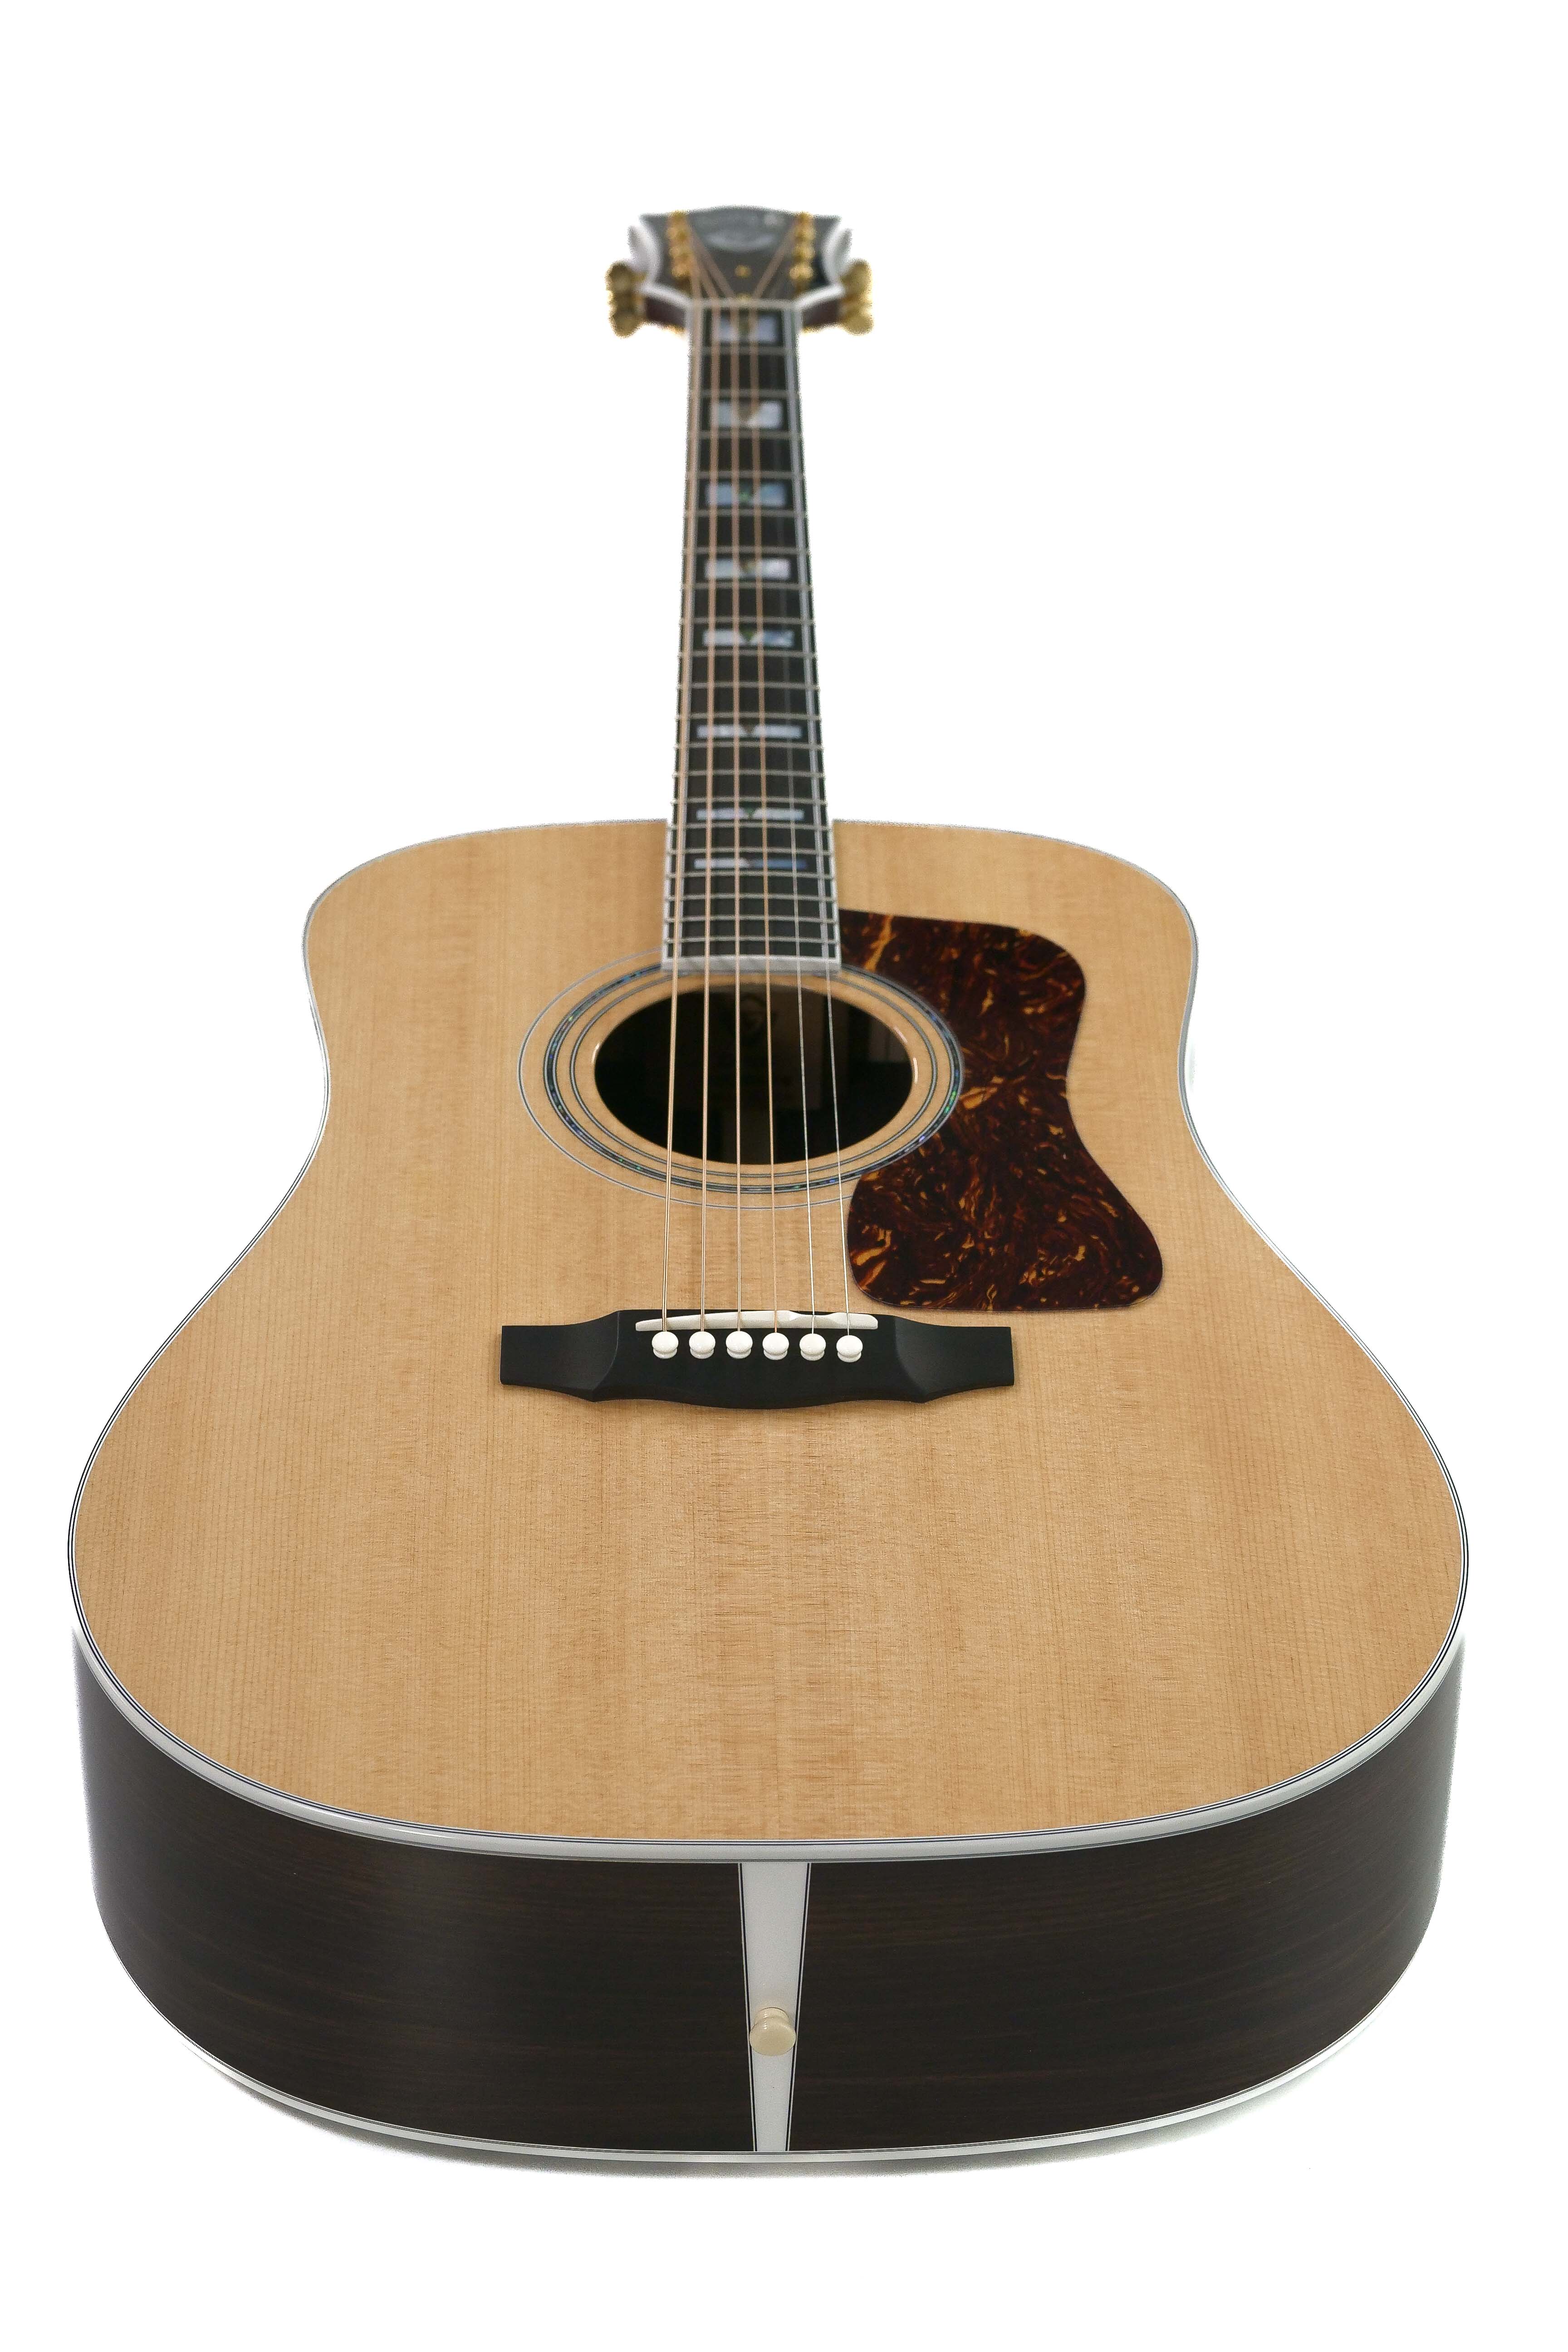 Guild D-55 Acoustic Guitar